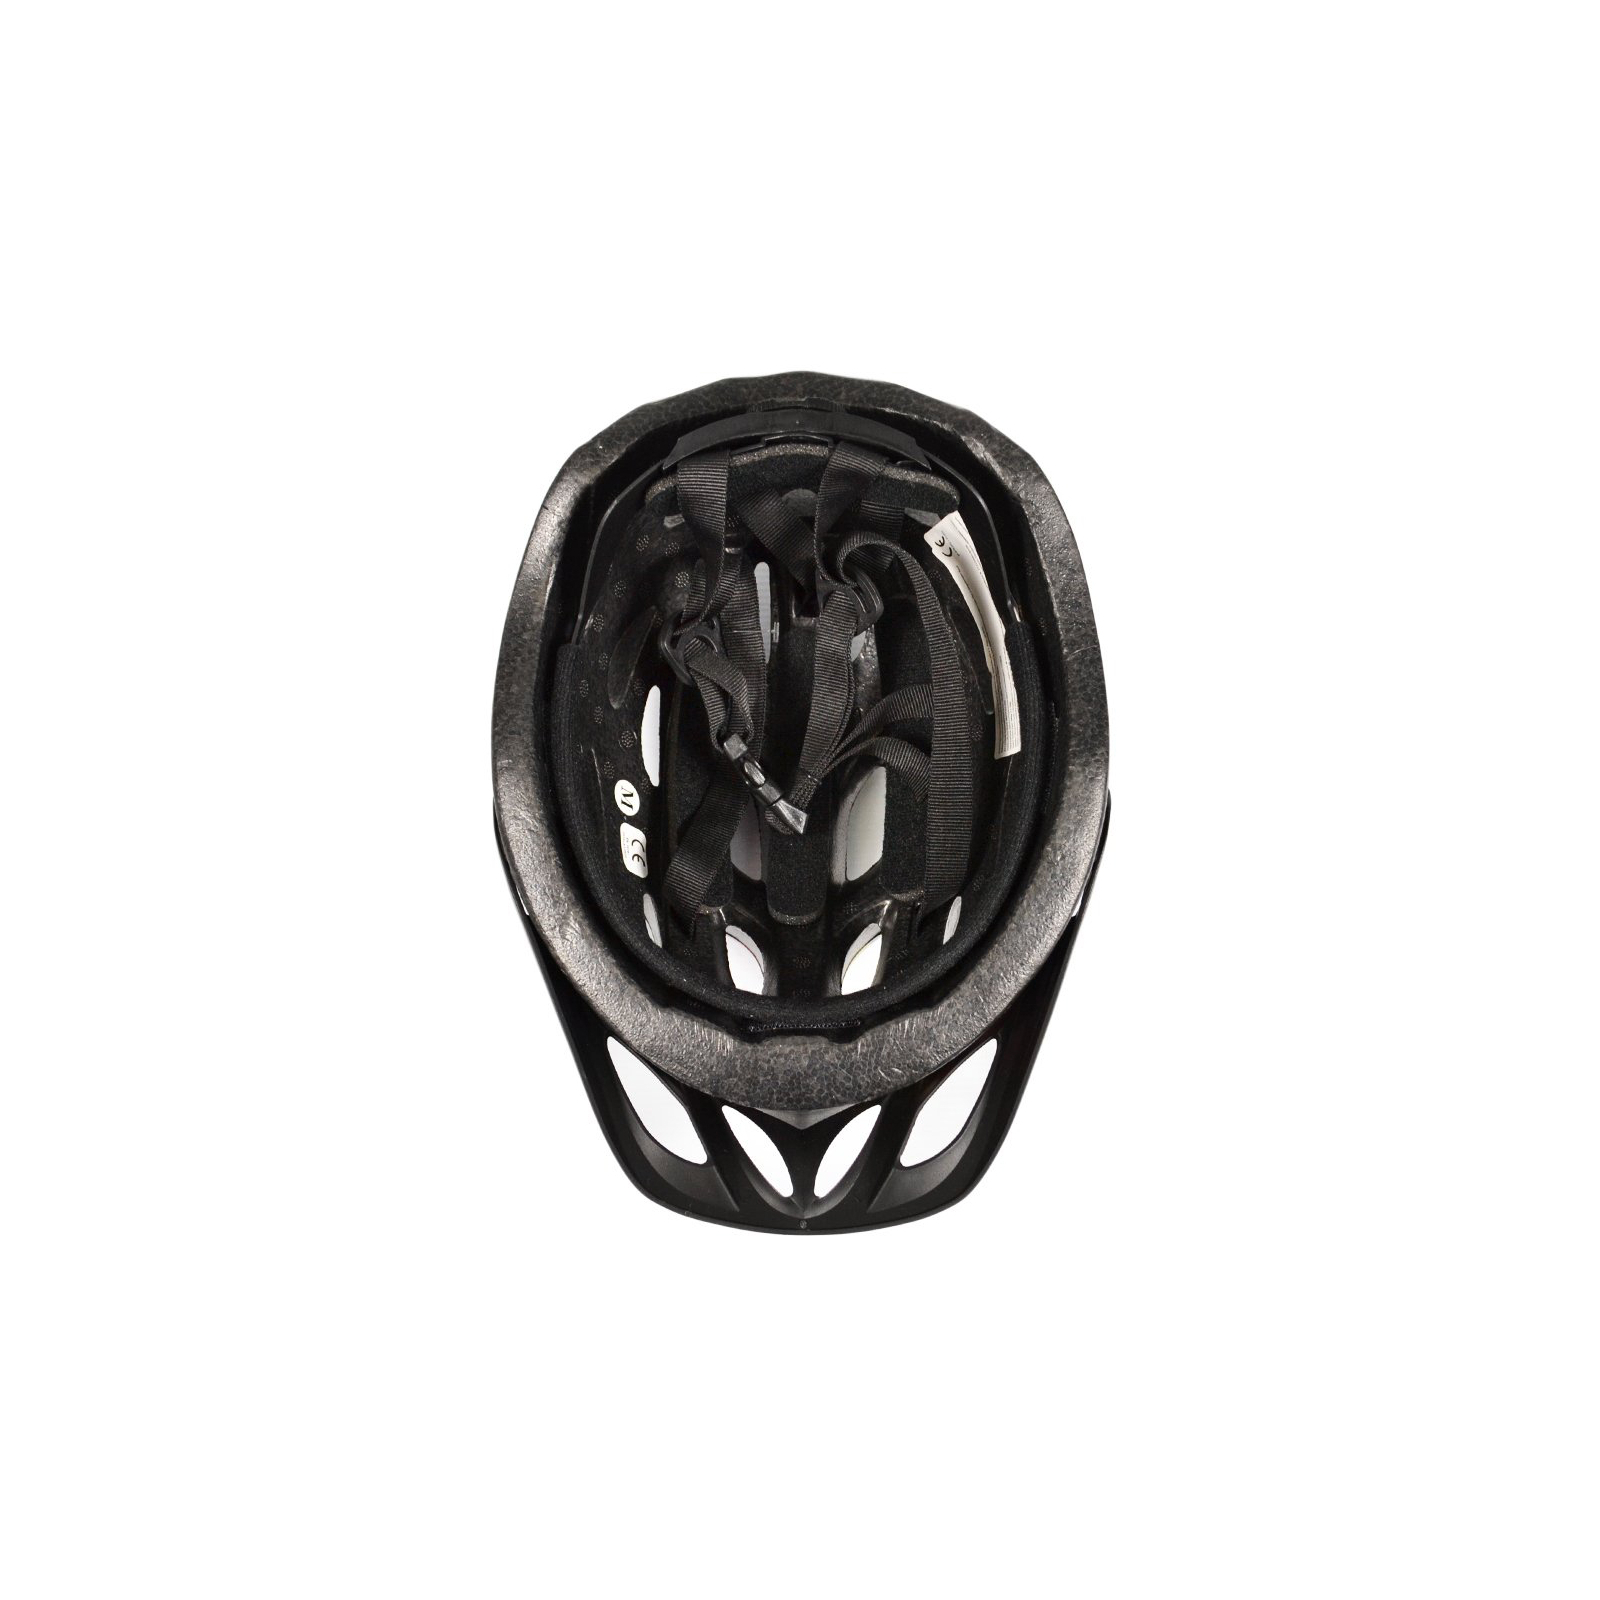 Шлем Good Bike M 56-58 см Black/White (88854/4-IS) изображение 5